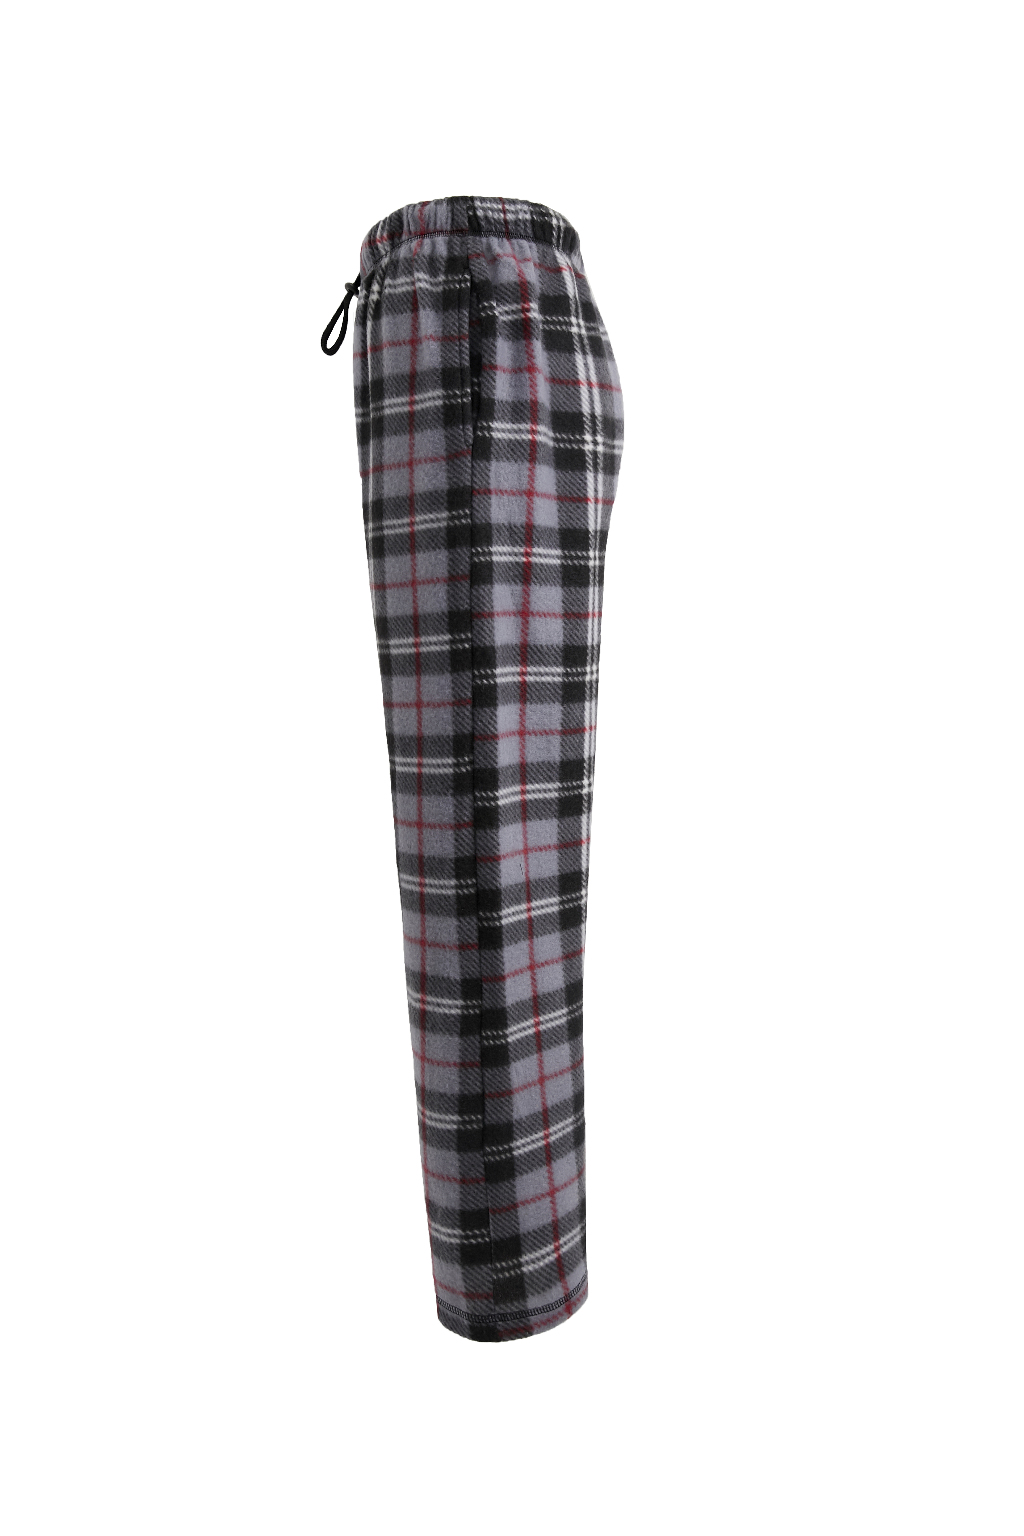 Wholesale Men's Fleece Pajama Pants - 3X-5X, Blue Plaid